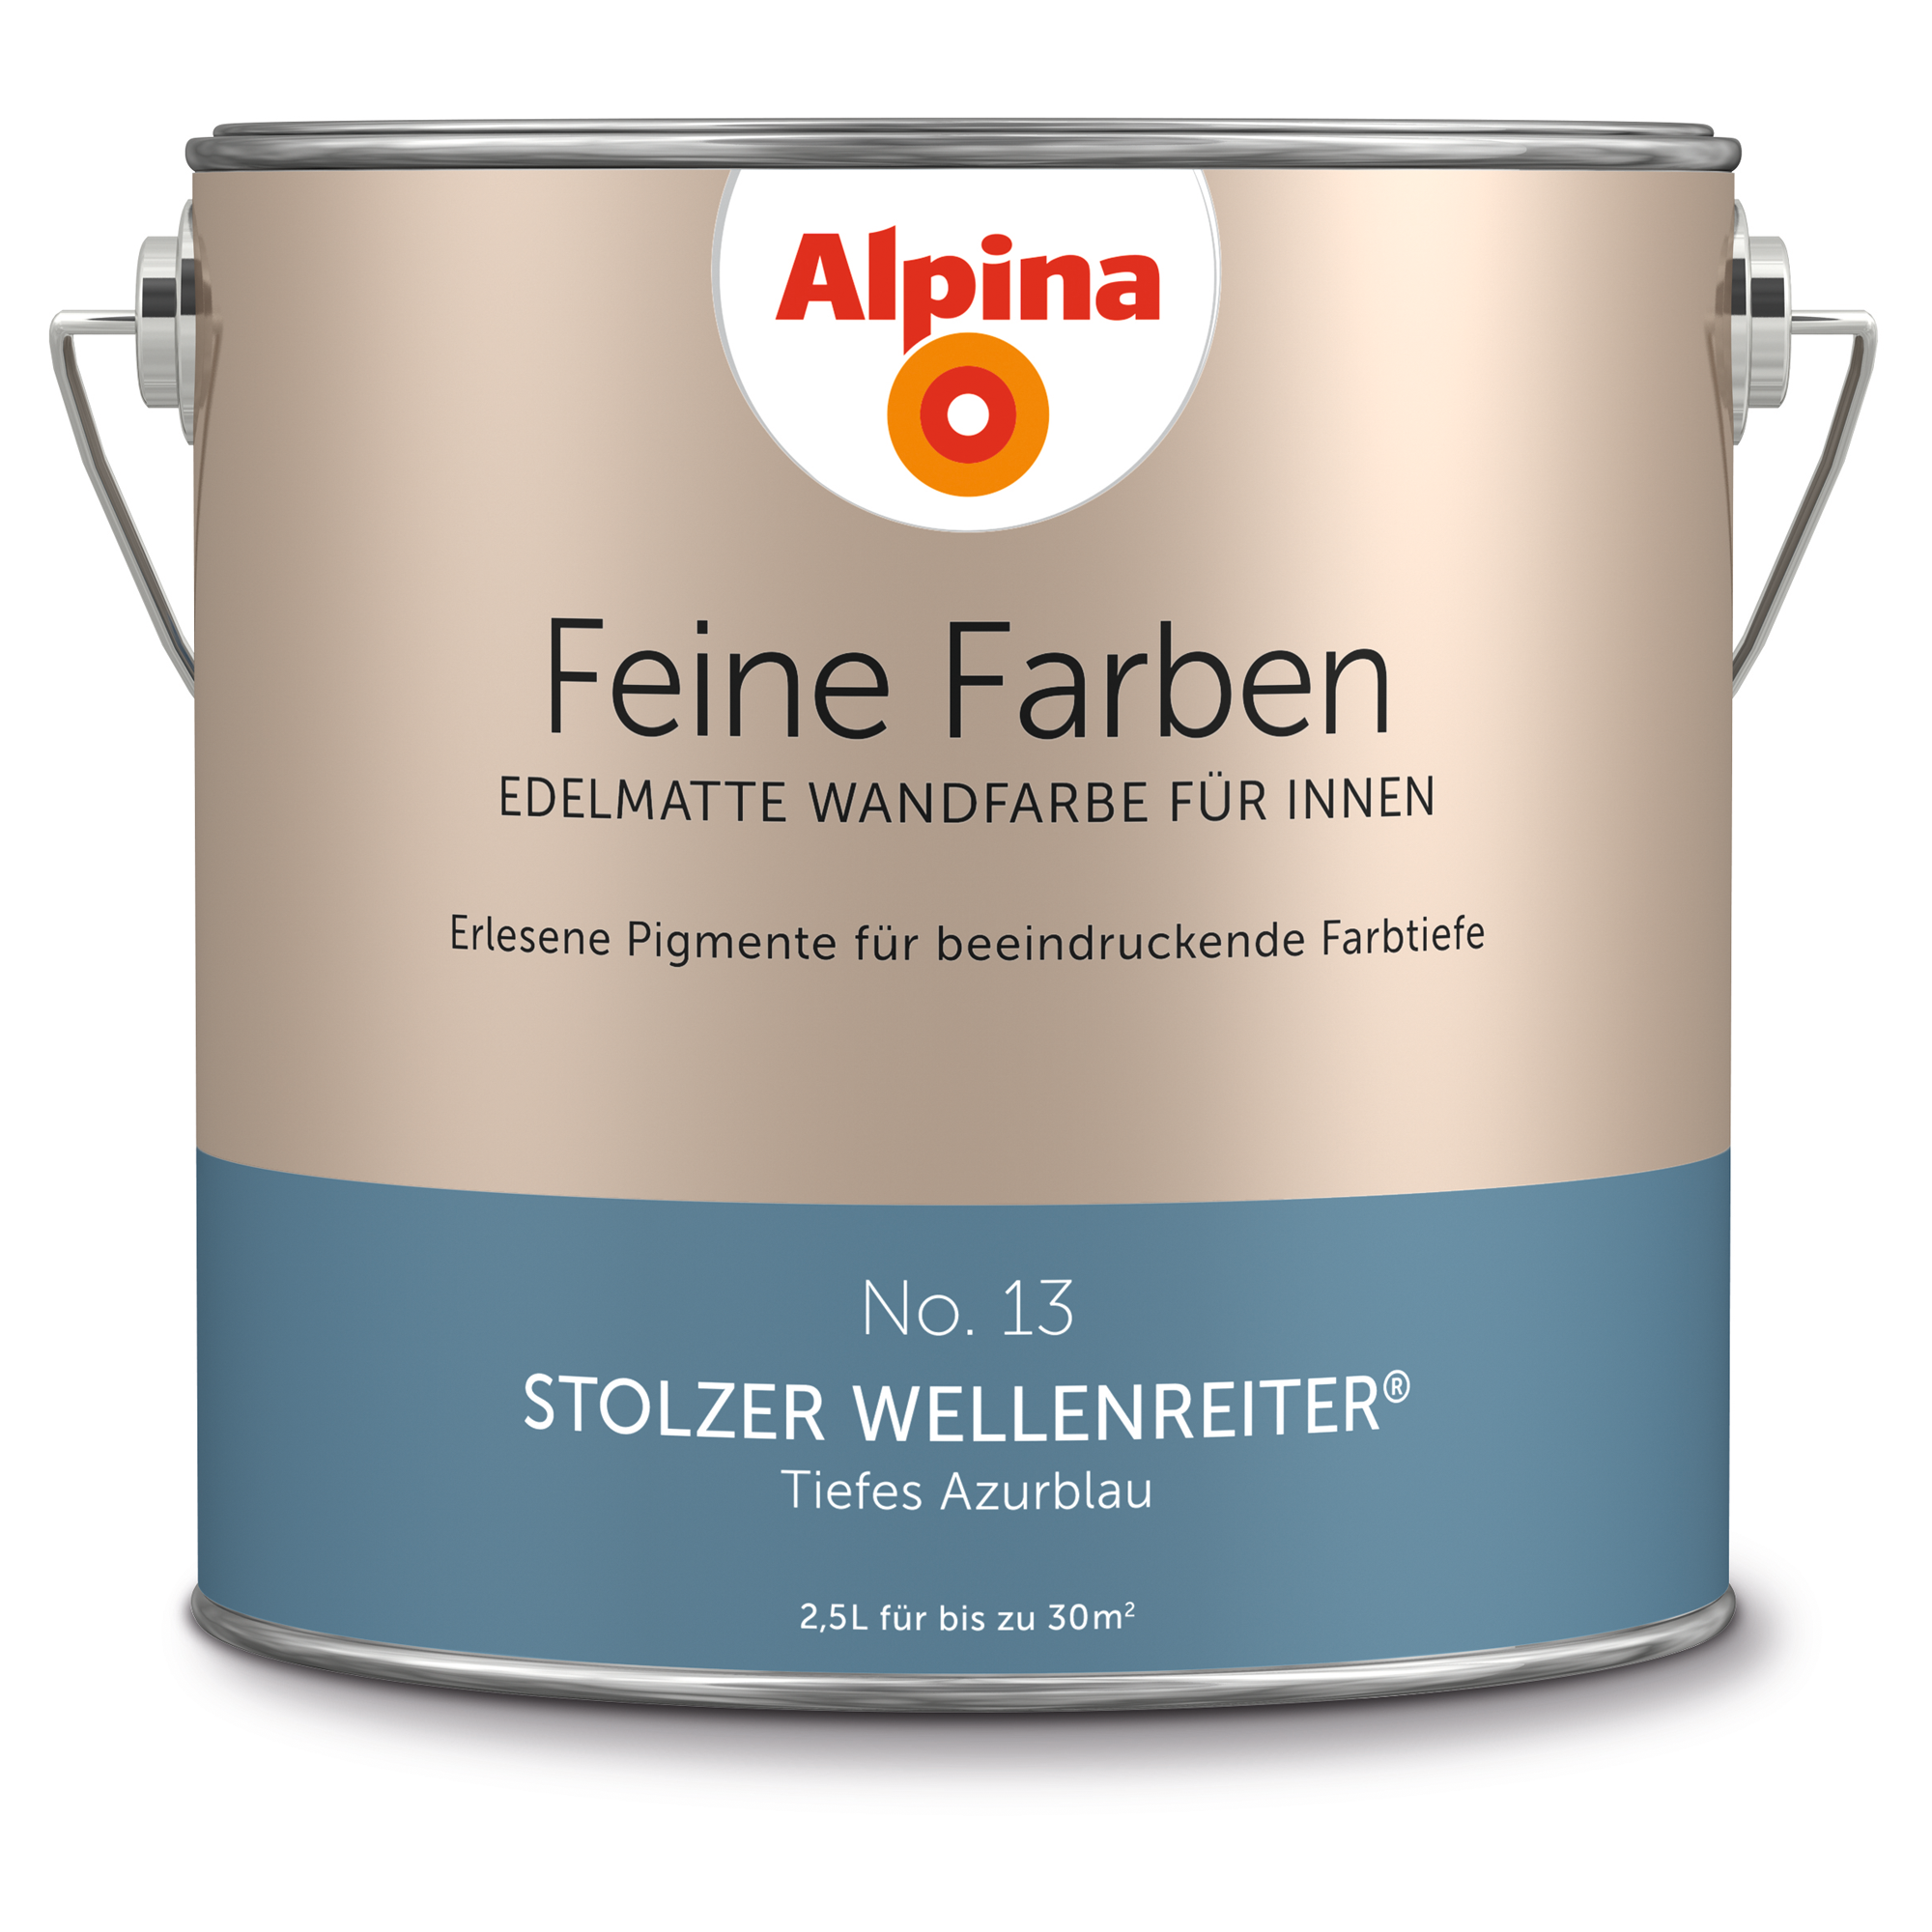 Feine Farben 'Wellenreiter' azurblau matt 2,5 l + product picture